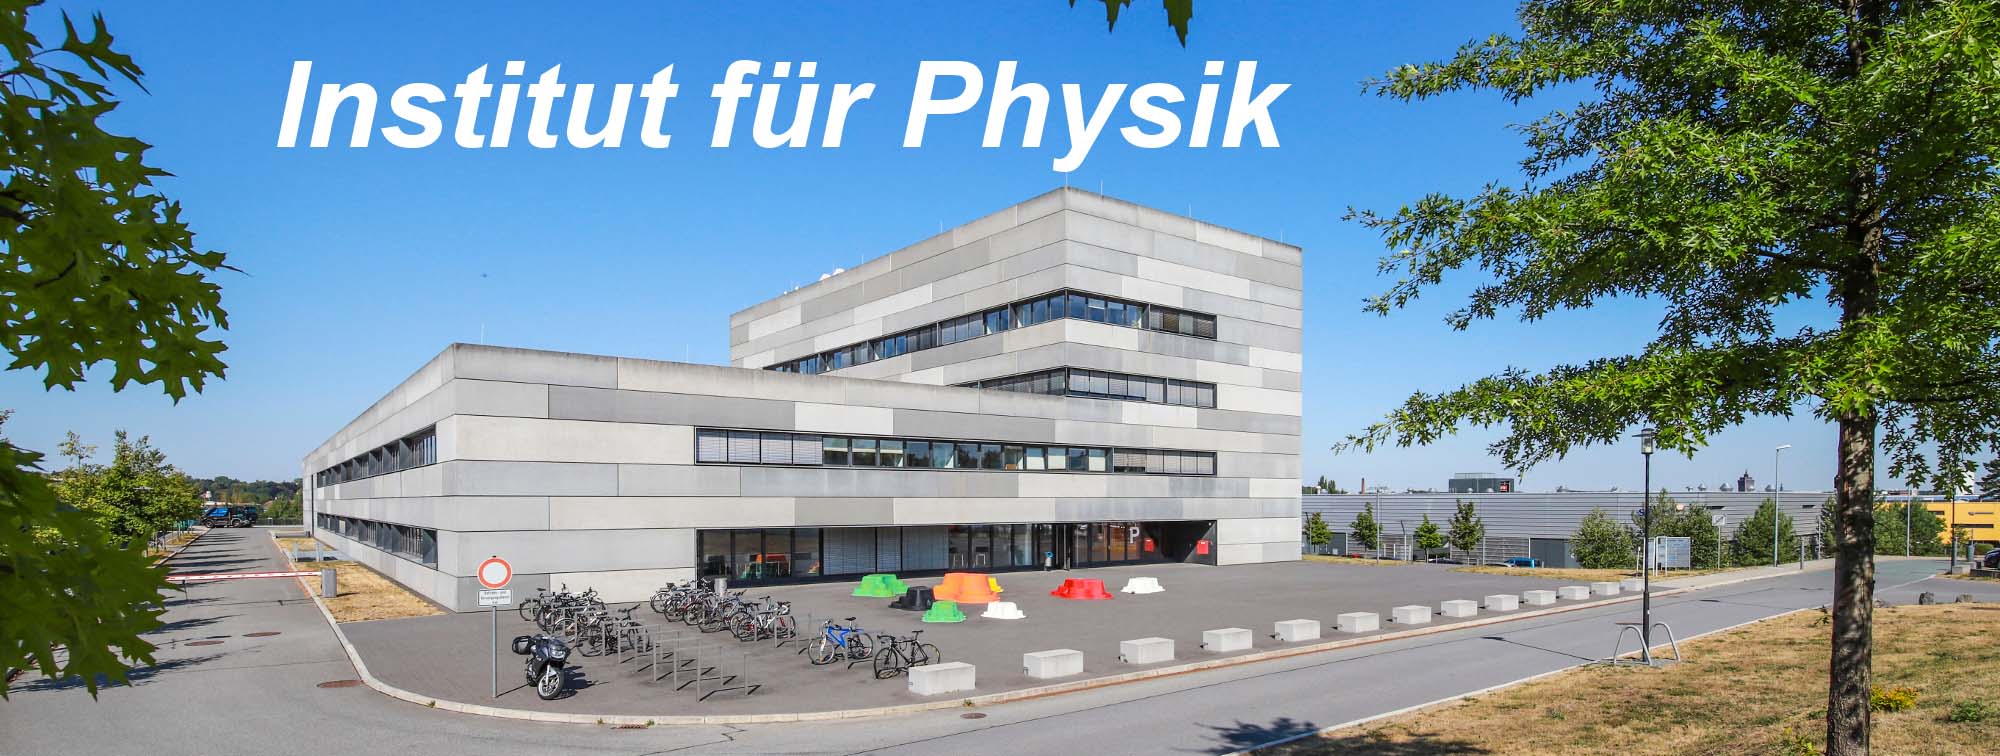 Insititut für Physik - Außenaufnahme Institutsgebäude